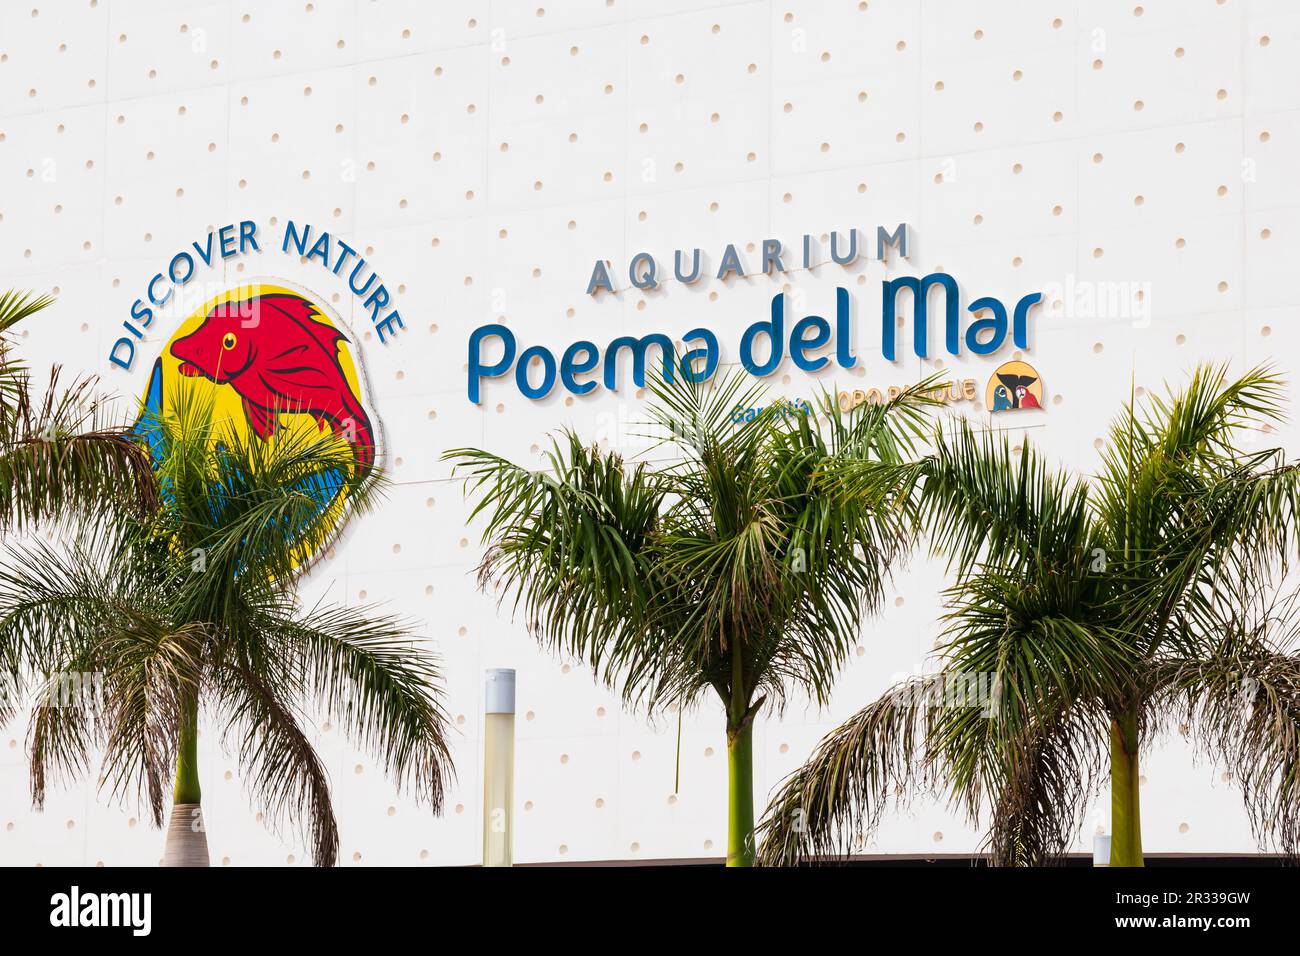 Aquarium Poema del Mar, Las Palmas, Gran Canaria, Spanien Stockfoto